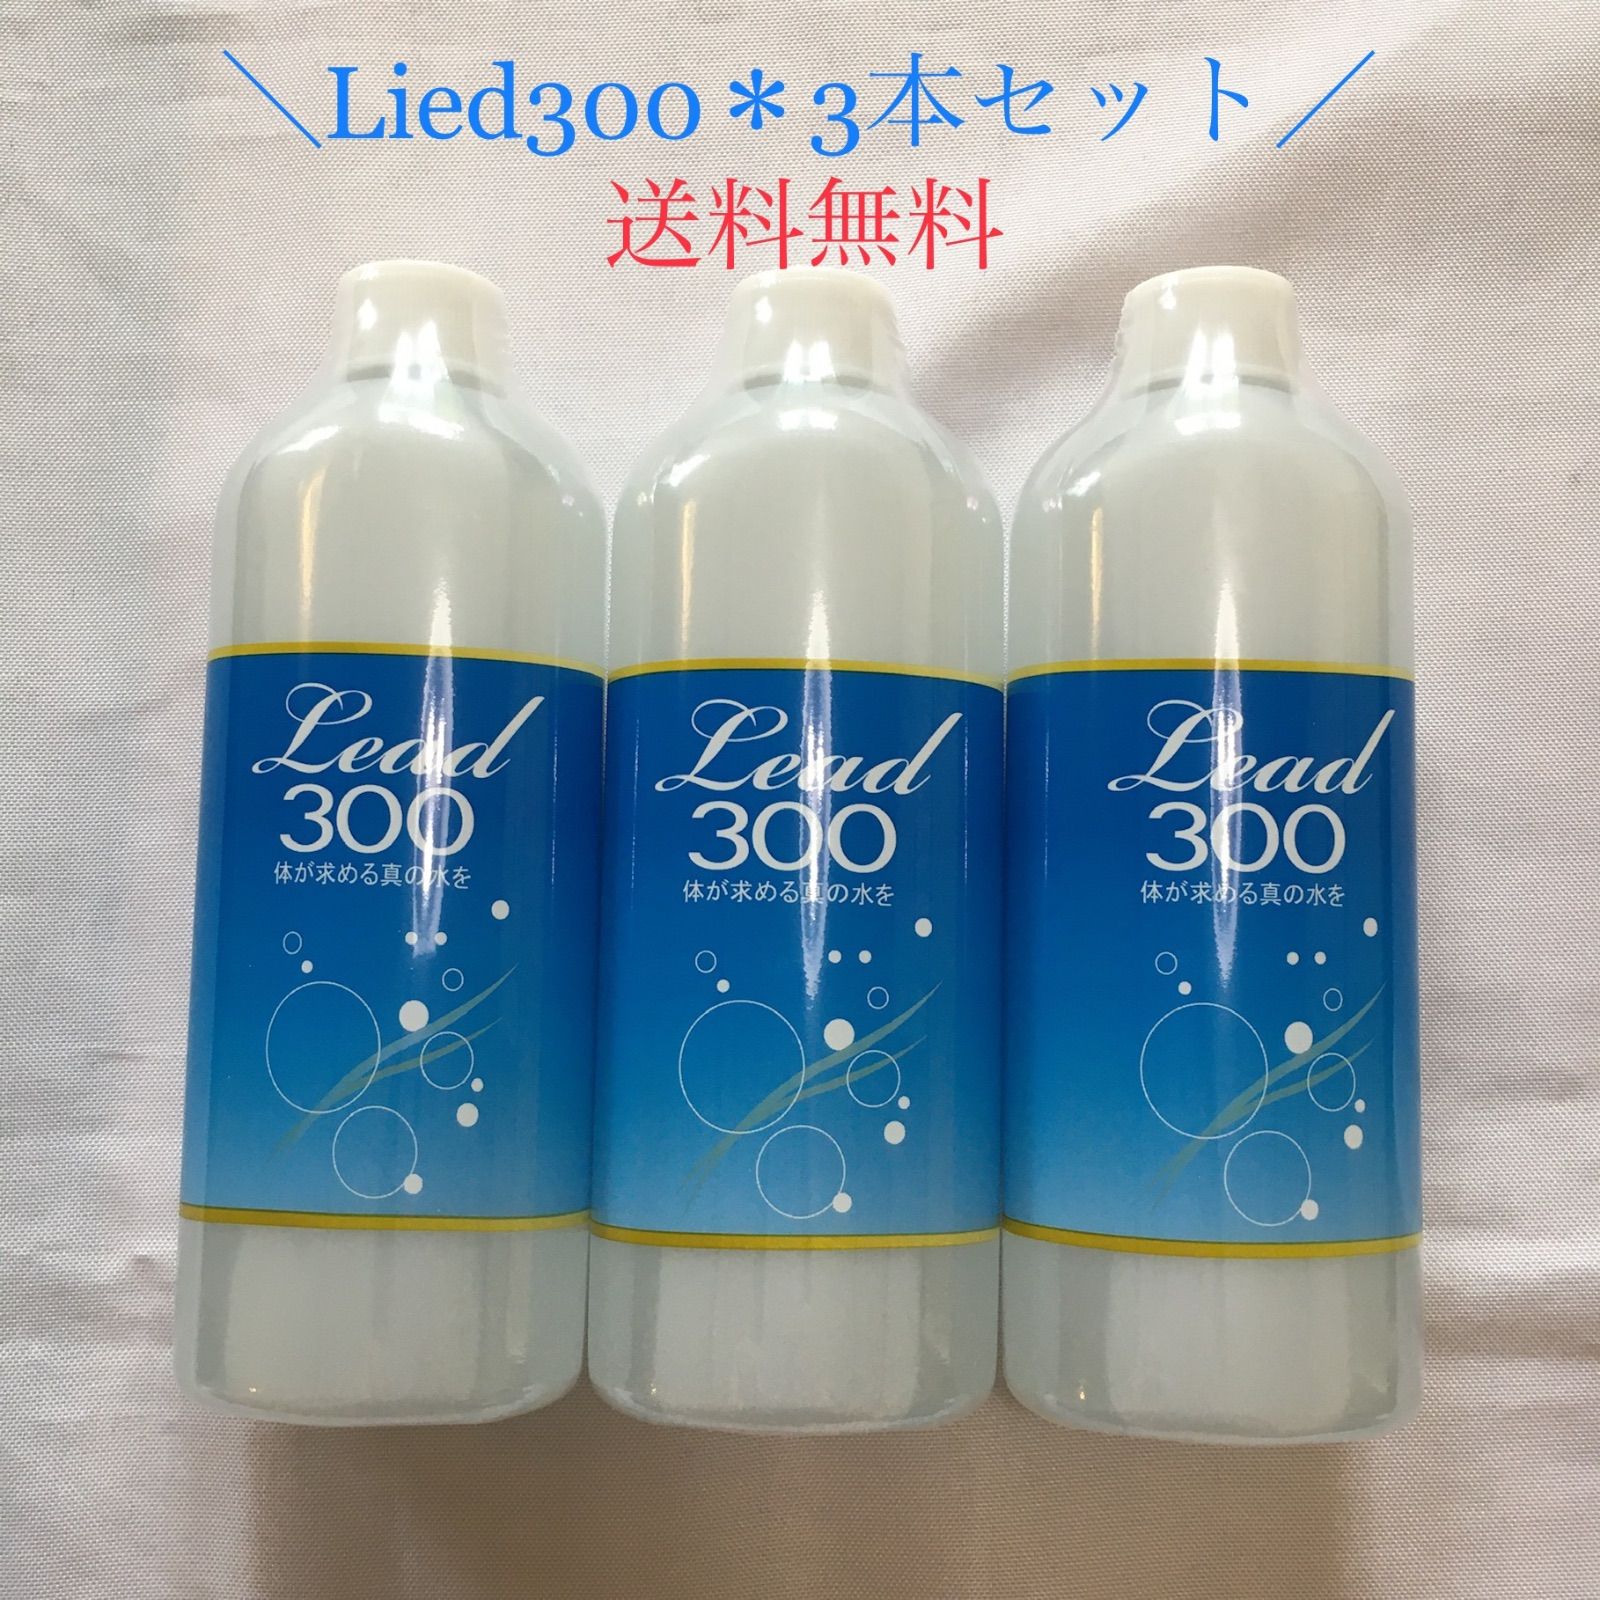 Lead300・株式会社ビリーブ 【送料無料】300mlミネラル新品3本ミネラル療法